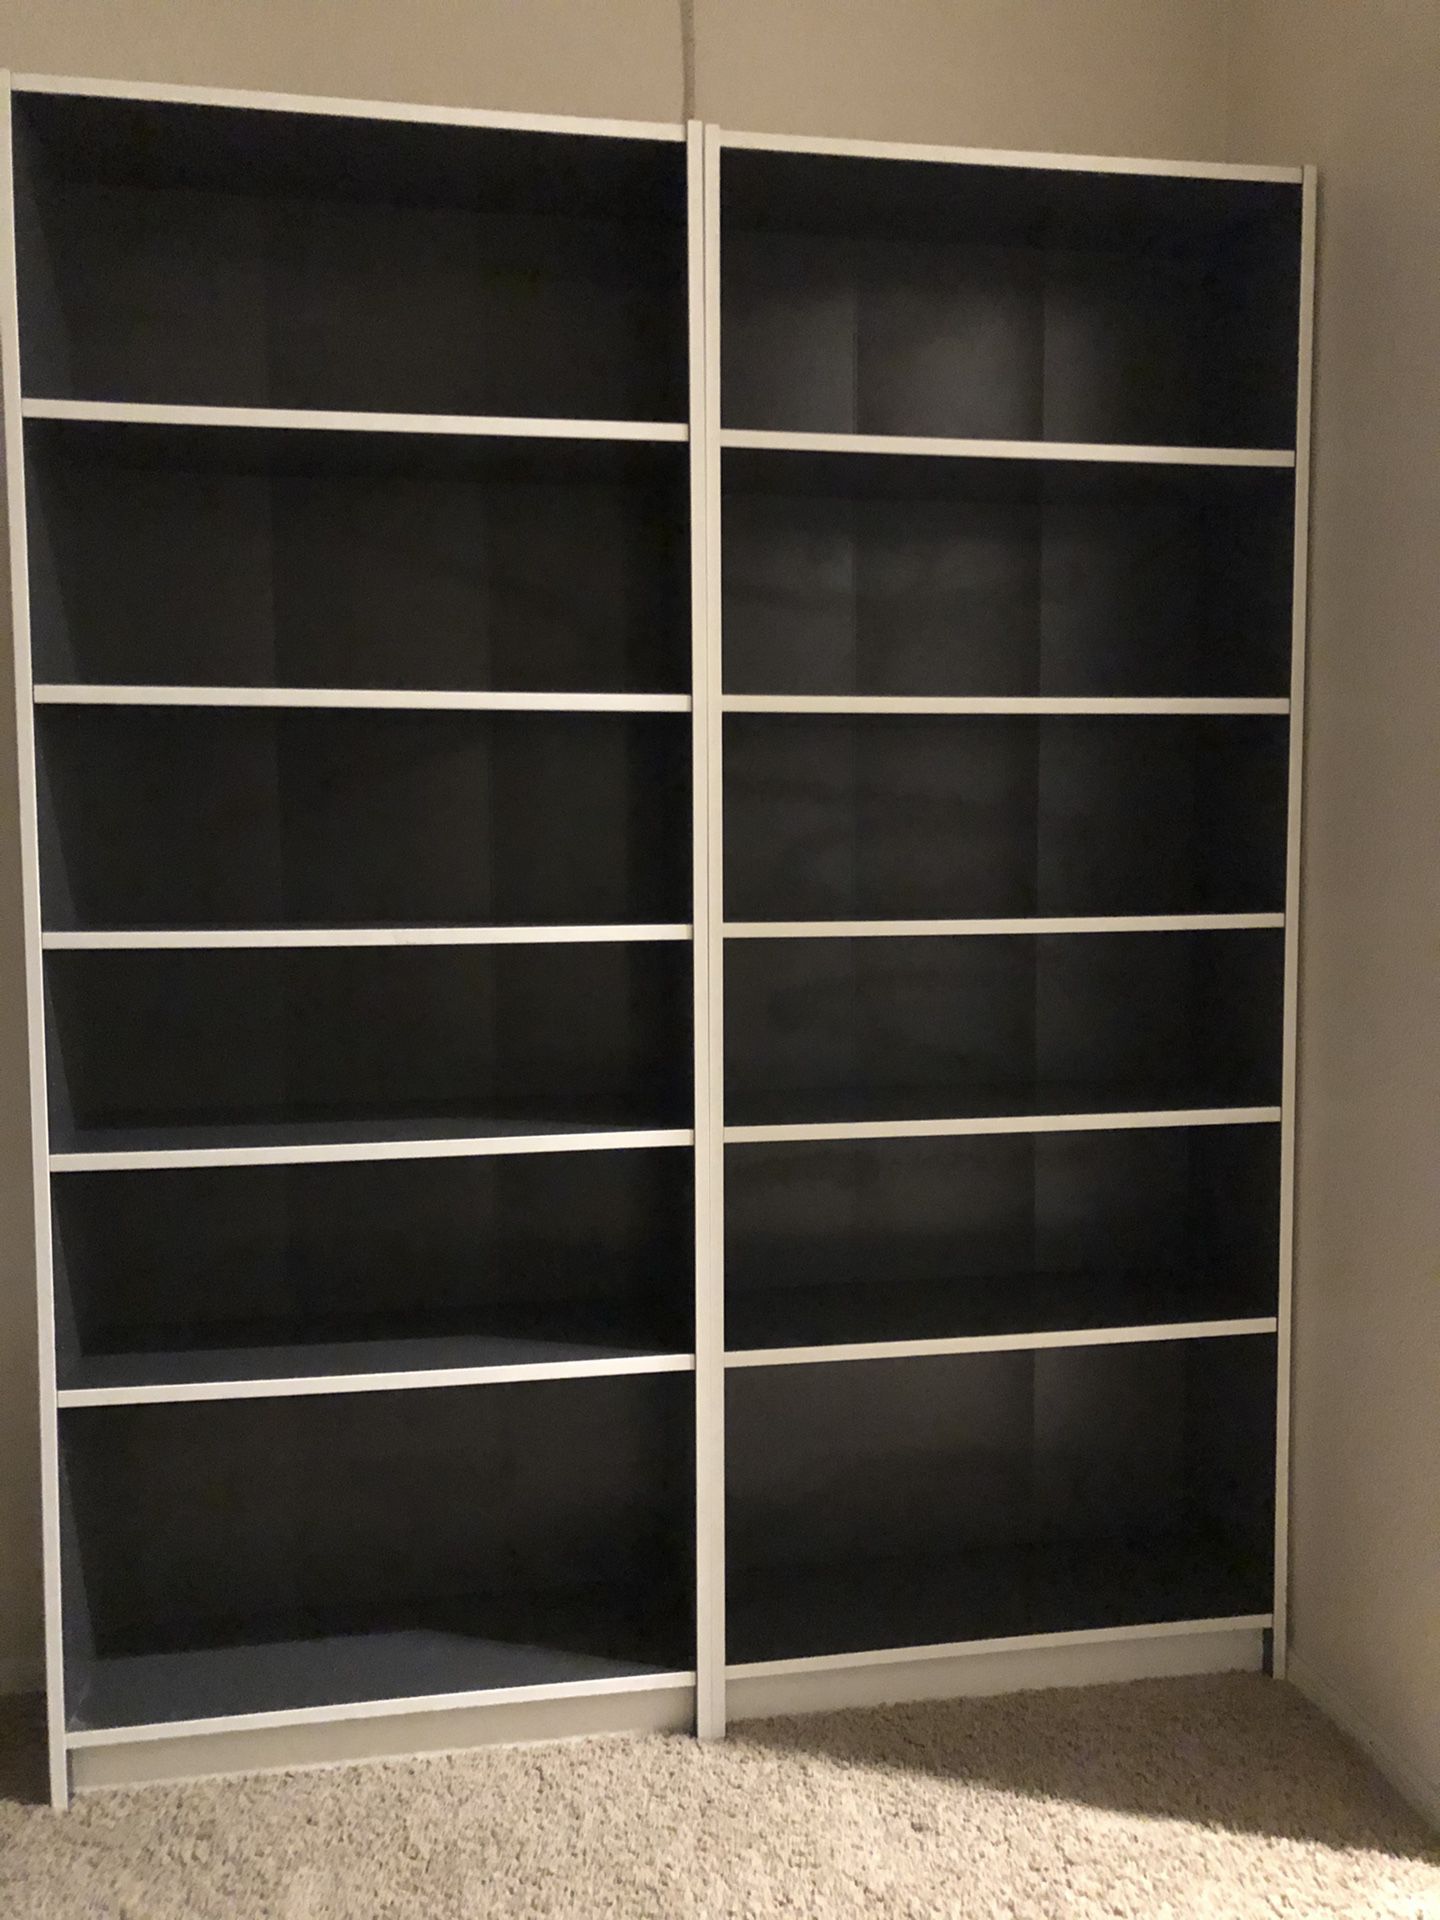 2 Bookshelves (IKEA)